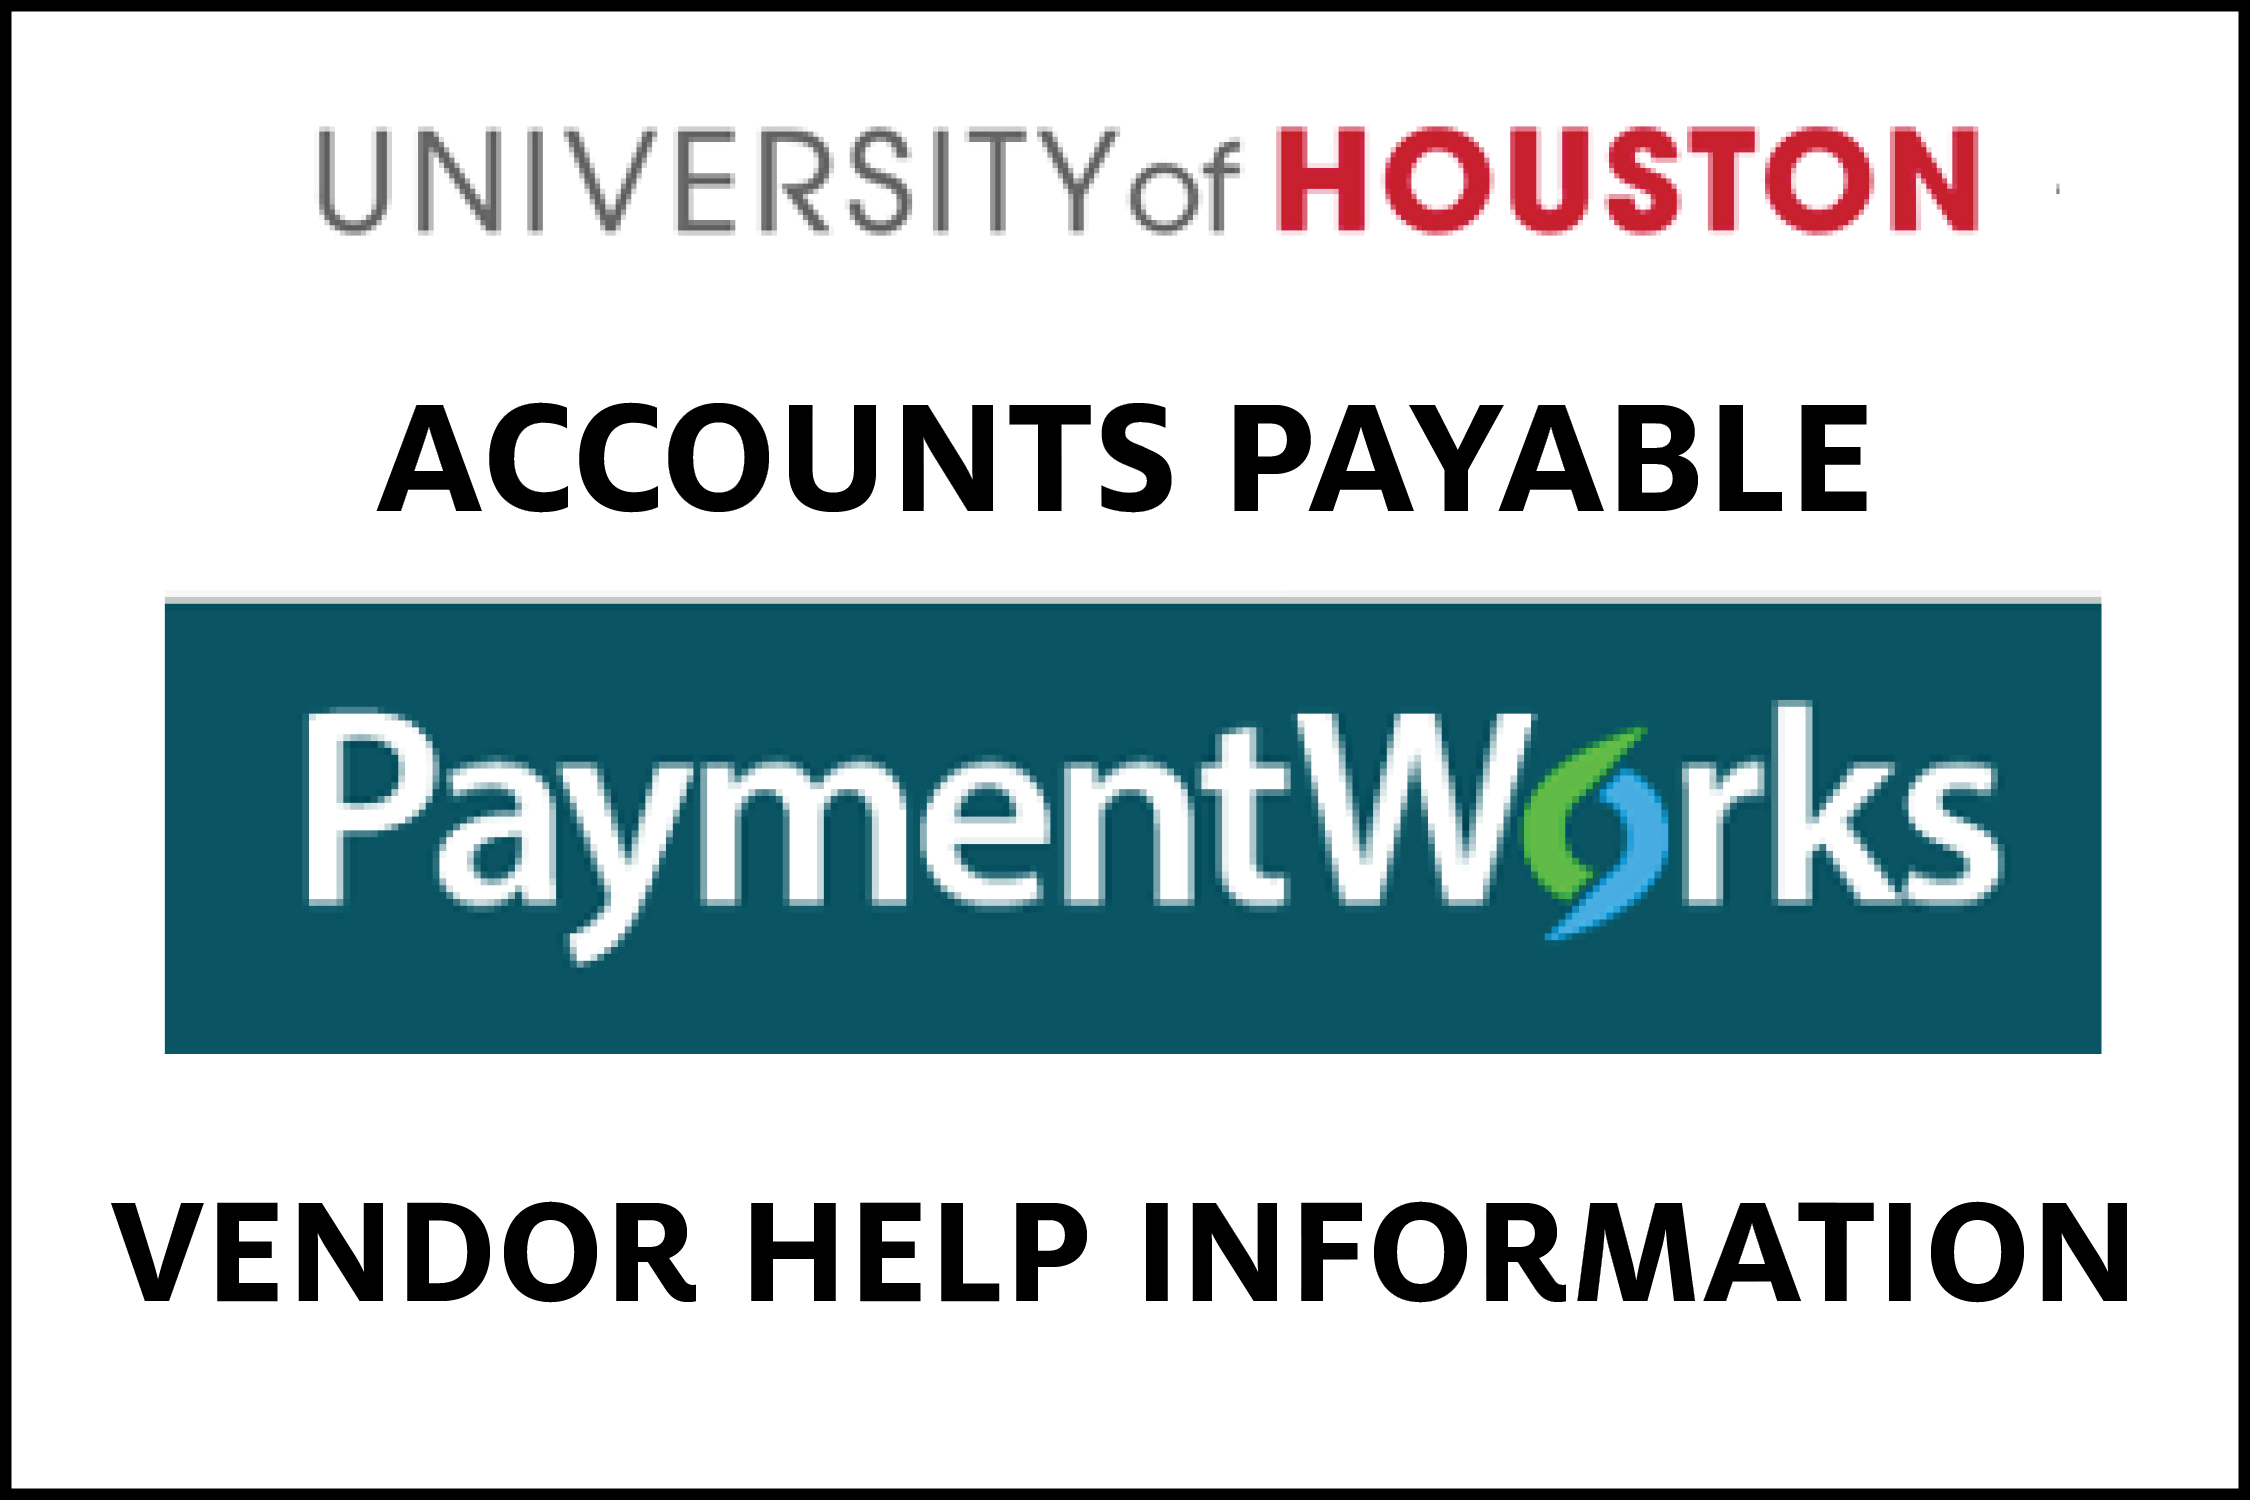 PaymentWorks Vendor Help Information